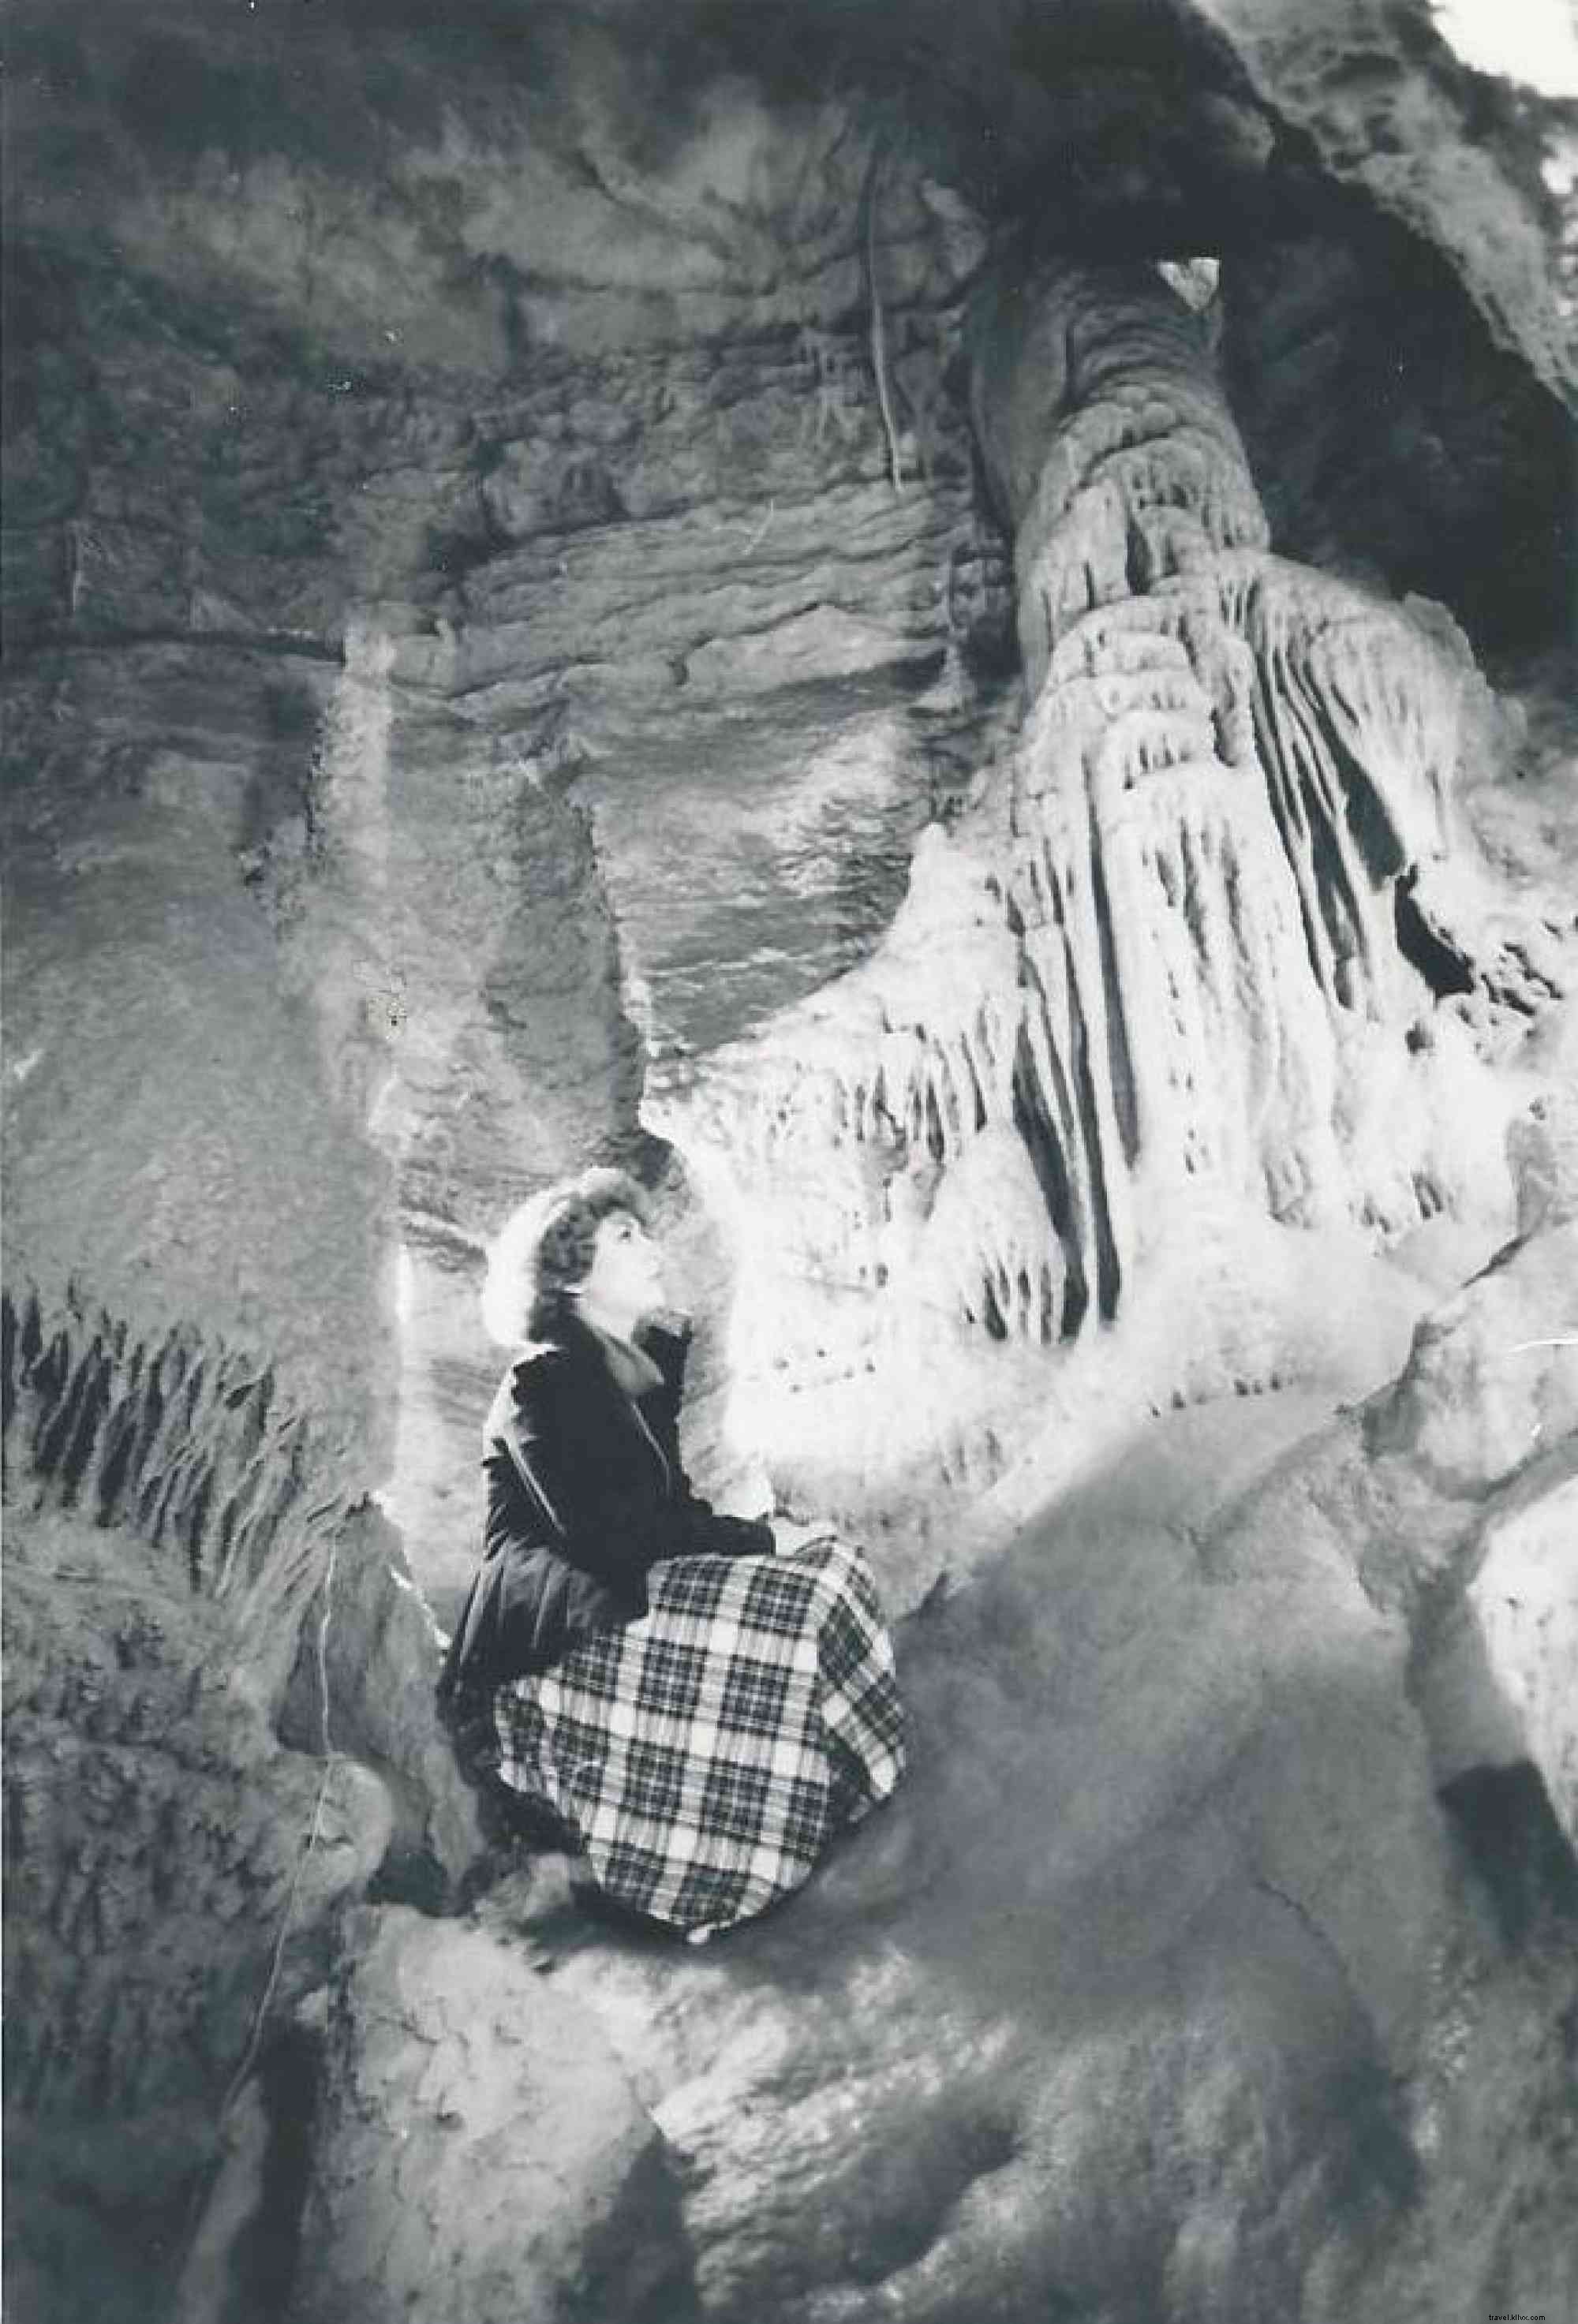 incoln Caverns celebra 90 anni di scoperte 